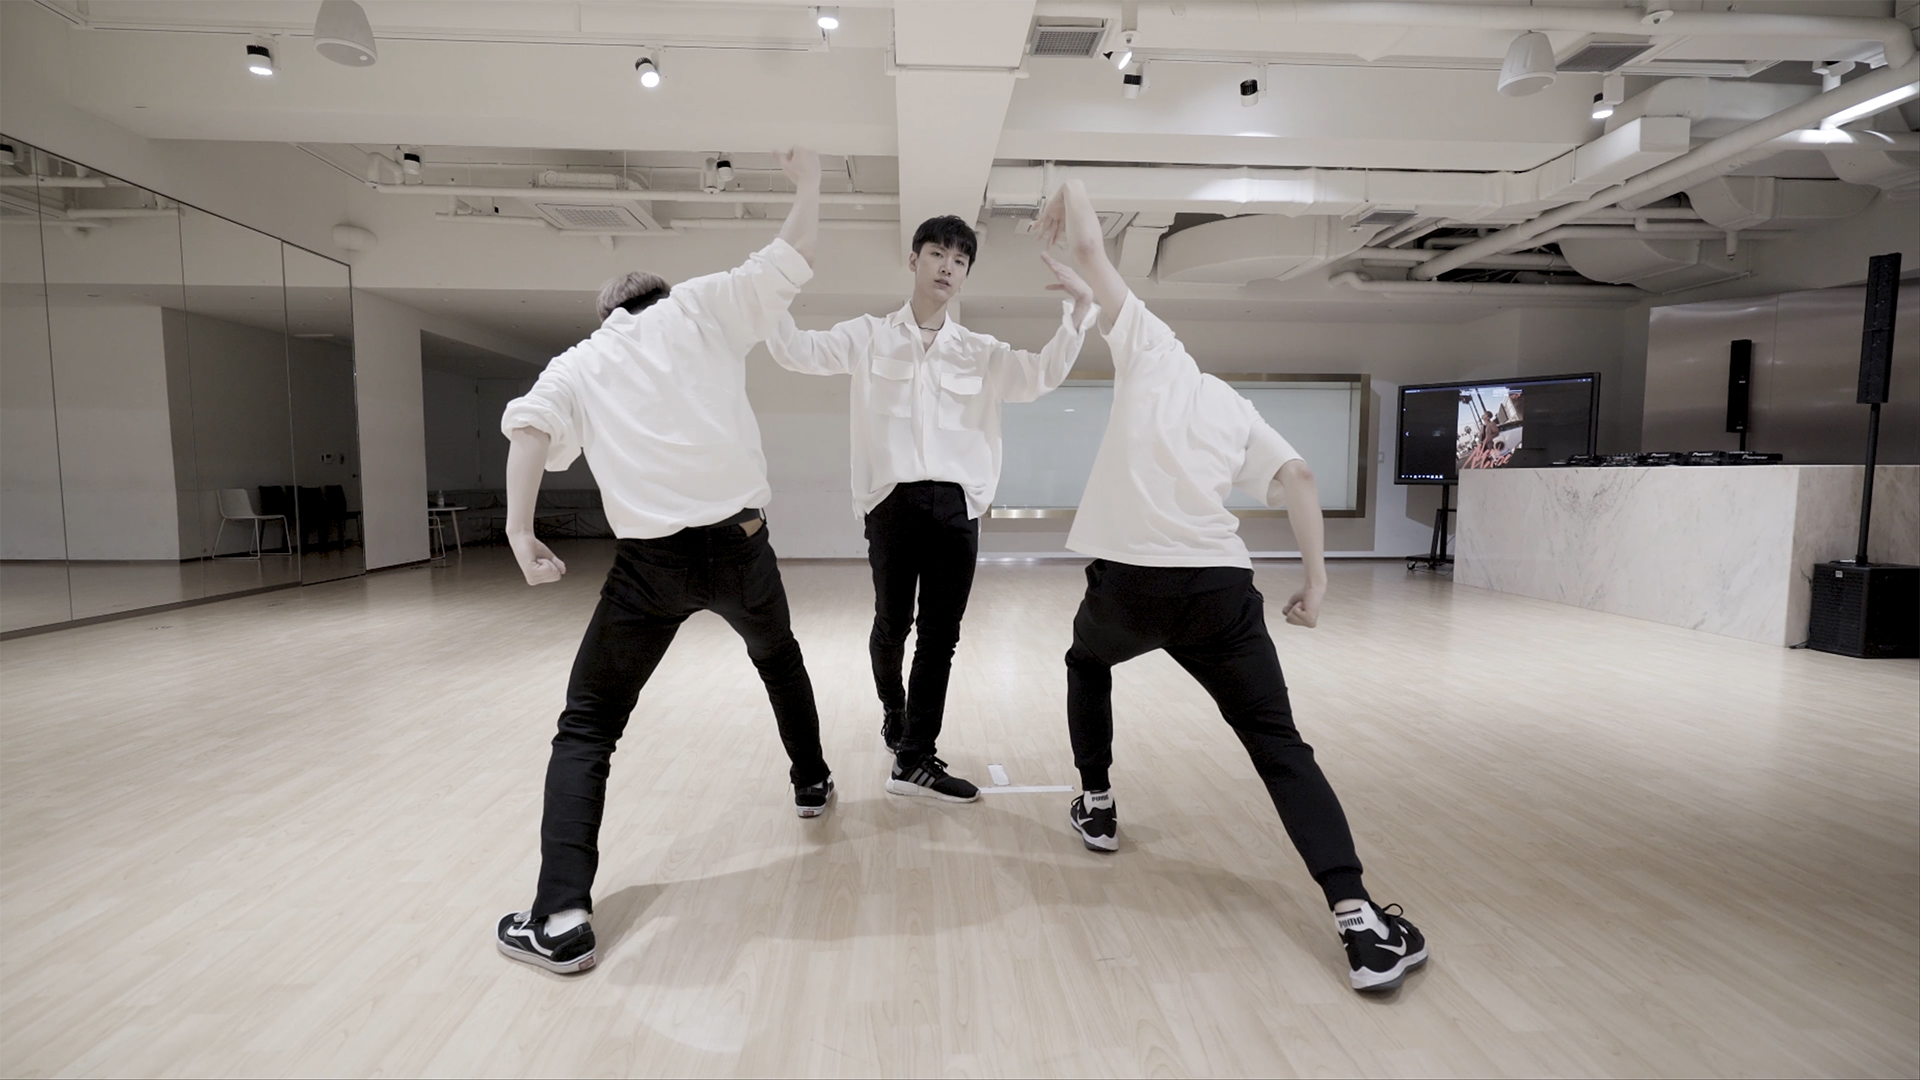 [STATION] TEN 텐 'New Heroes' Dance Practice